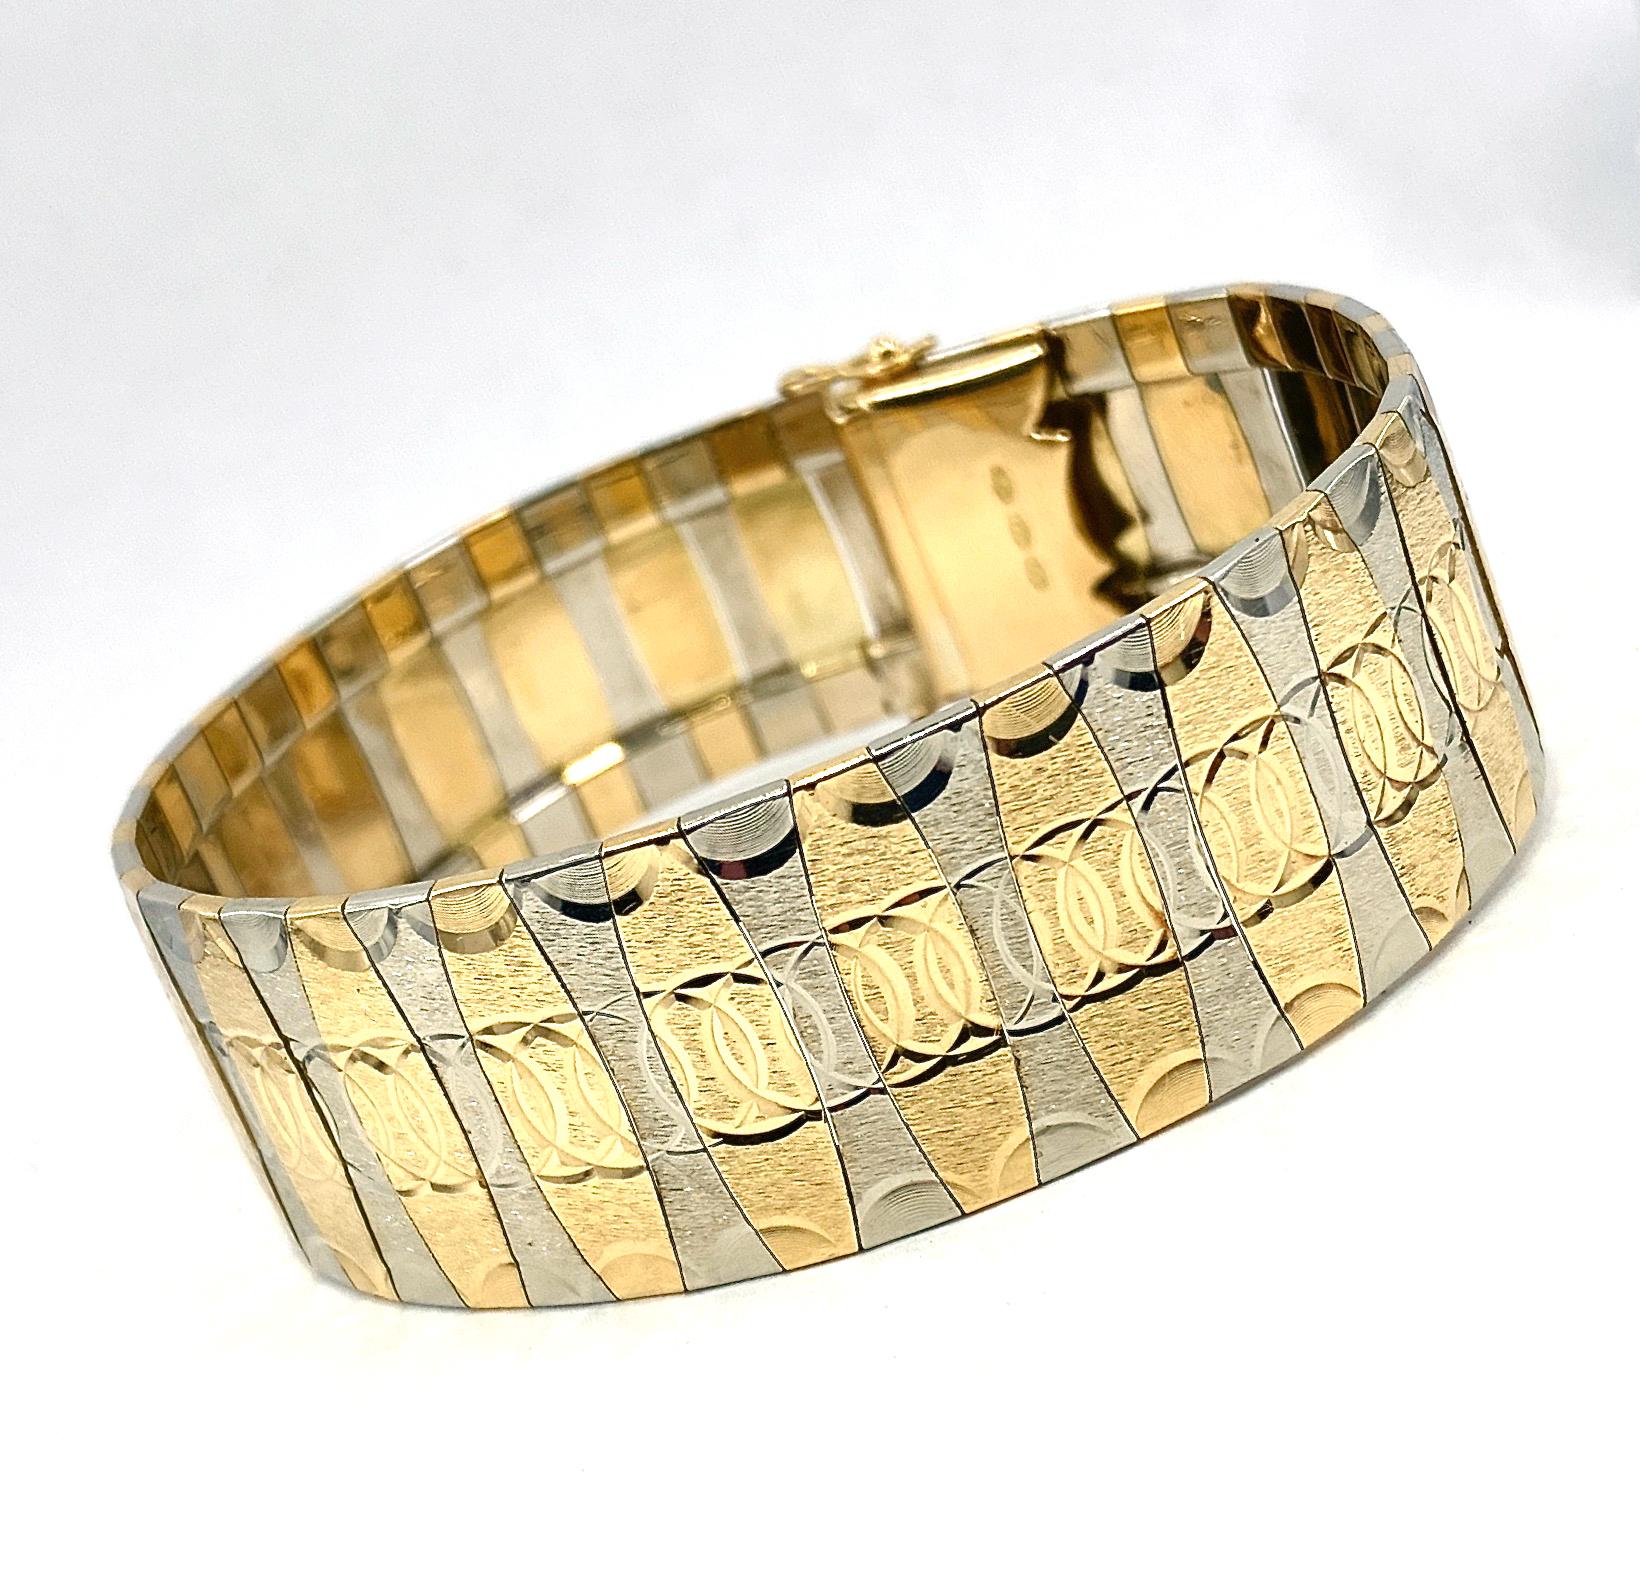 Dieses wunderschön gefertigte italienische Armband besteht aus 18 Karat Gelb- und Weißgold mit einem fortlaufenden Muster aus ineinandergreifenden Kreisen im Diamantschliff.  Das Kreismotiv setzt sich entlang der  gezackte, hochglanzpolierte Kanten.